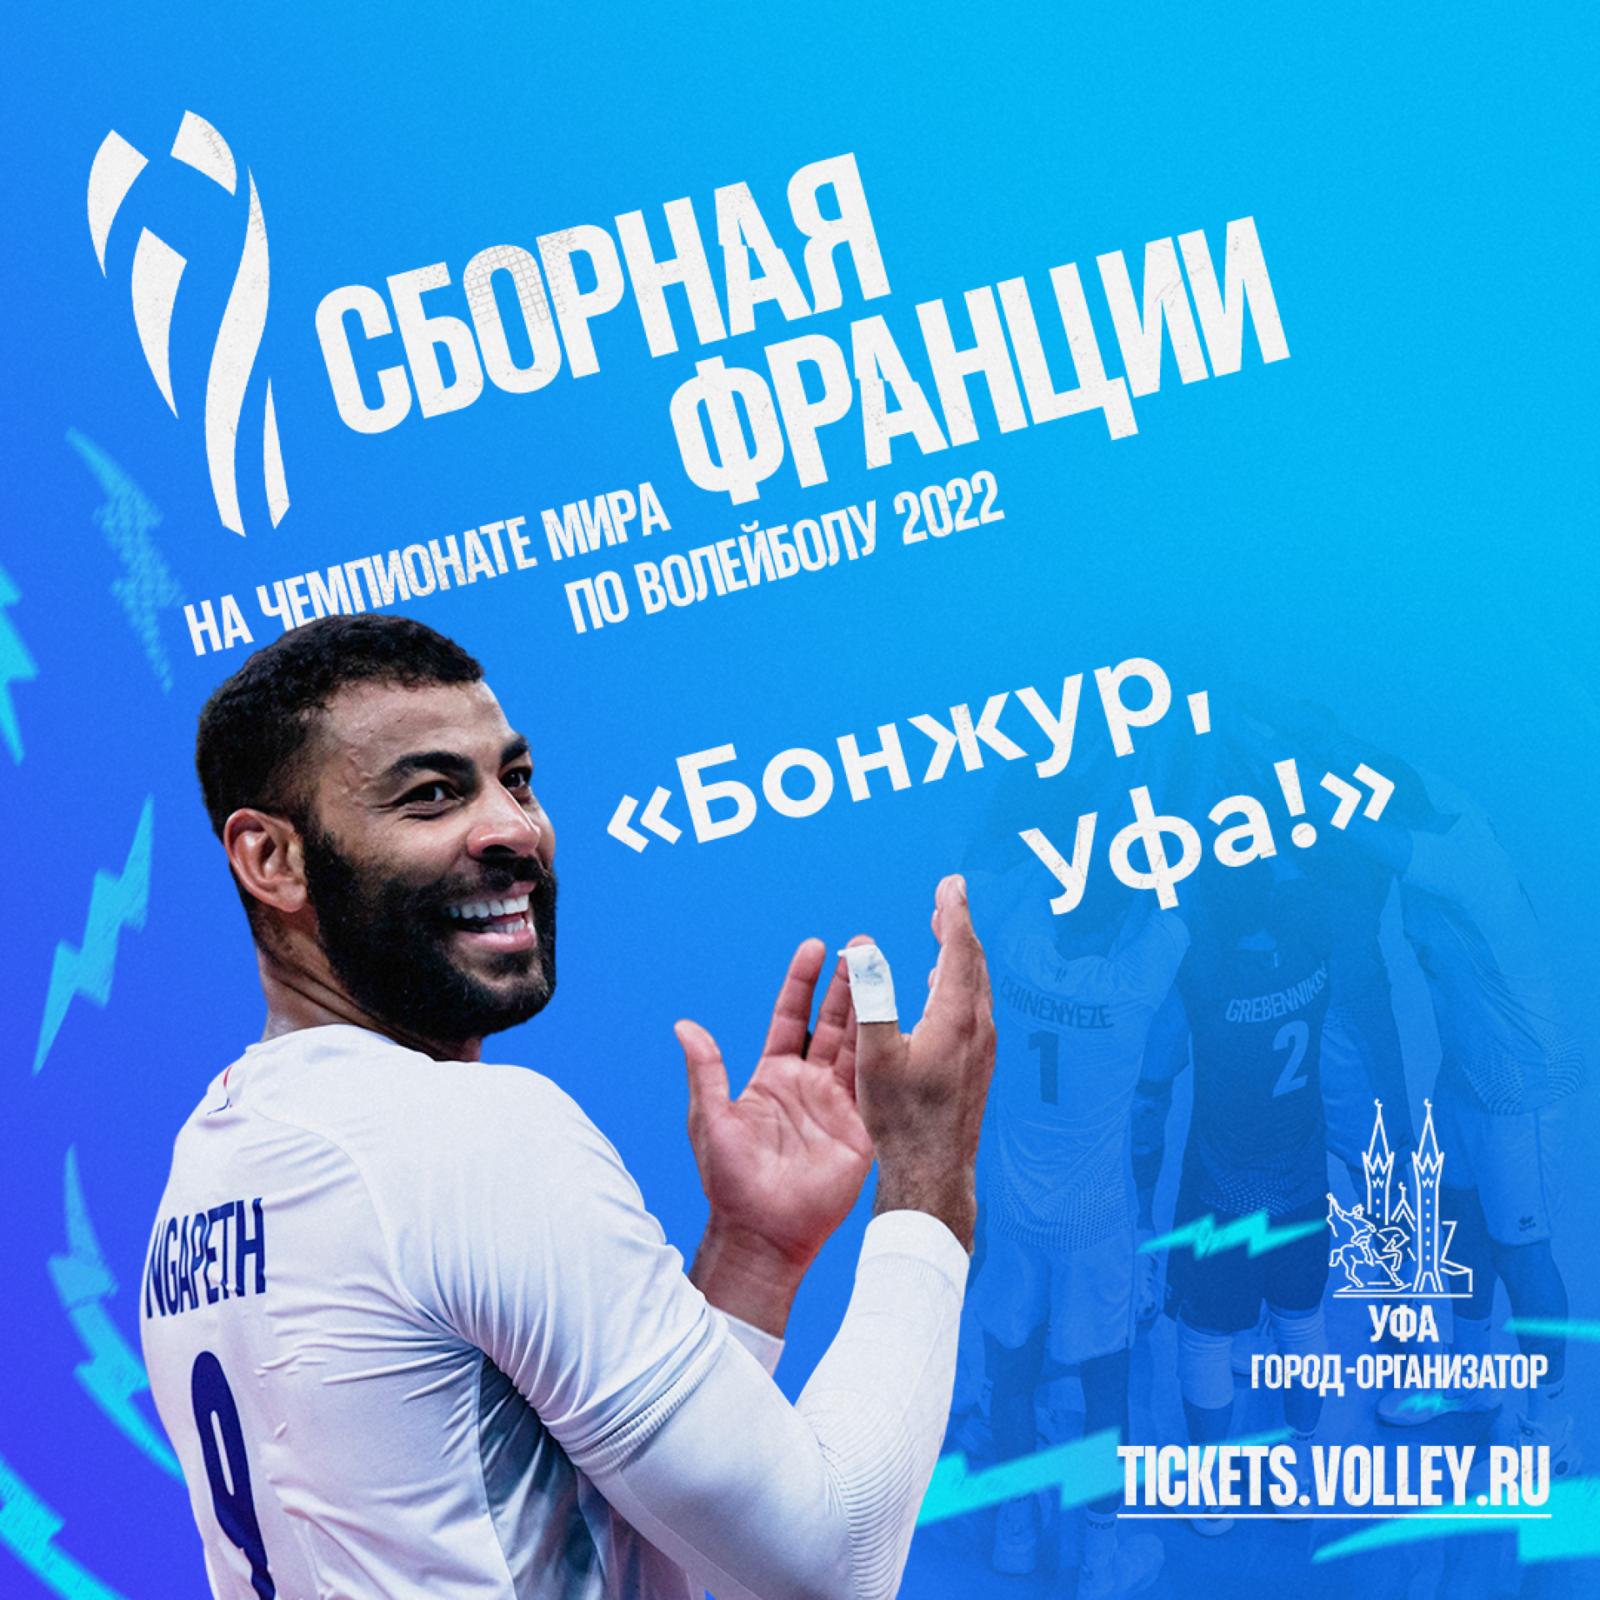 Новая партия билетов на Чемпионат мира по волейболу FIVB 2022 поступила в продажу